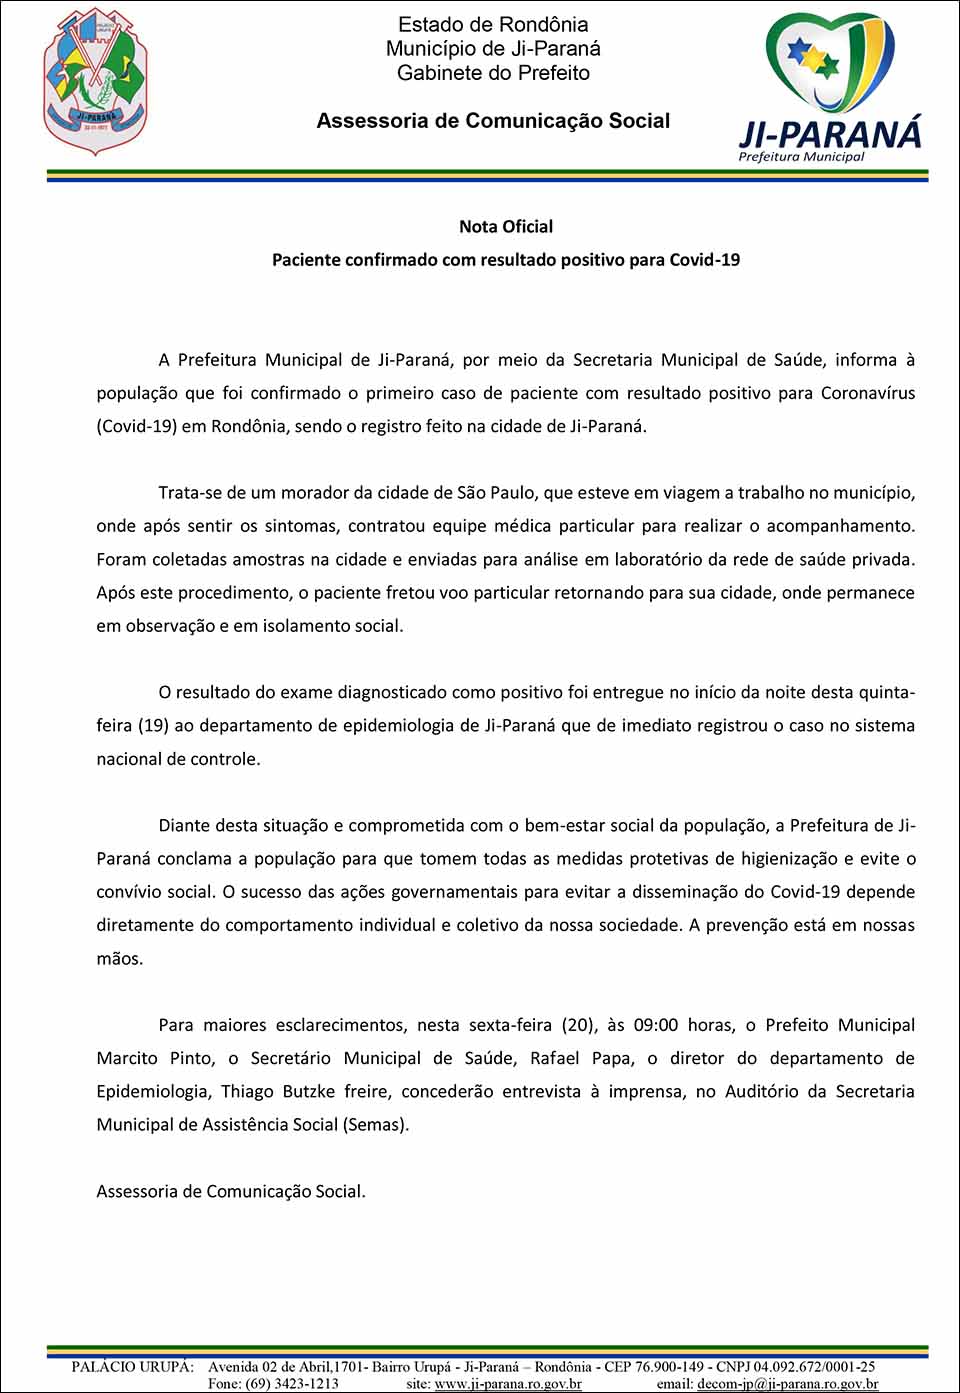 Nota Oficial da Prefeitura de Ji-Paraná sobre paciente com Coronavírus